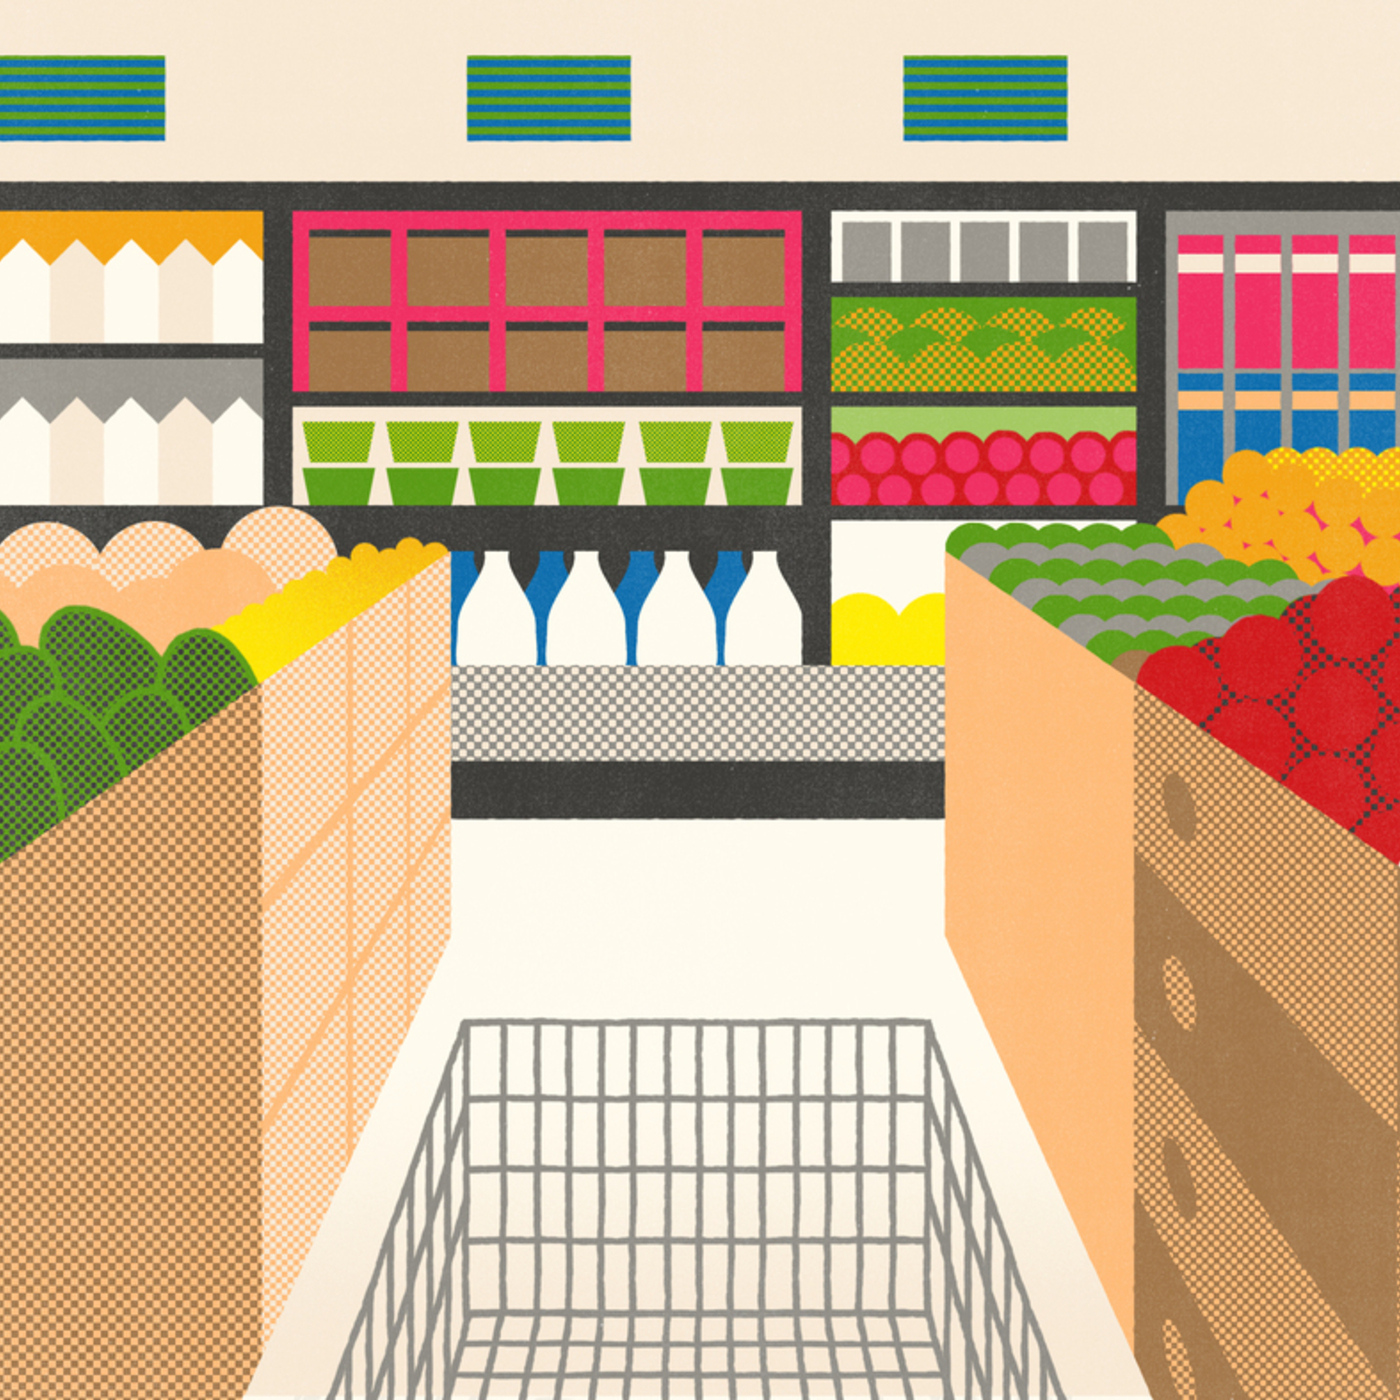 Whole Foods Market: John Mackey